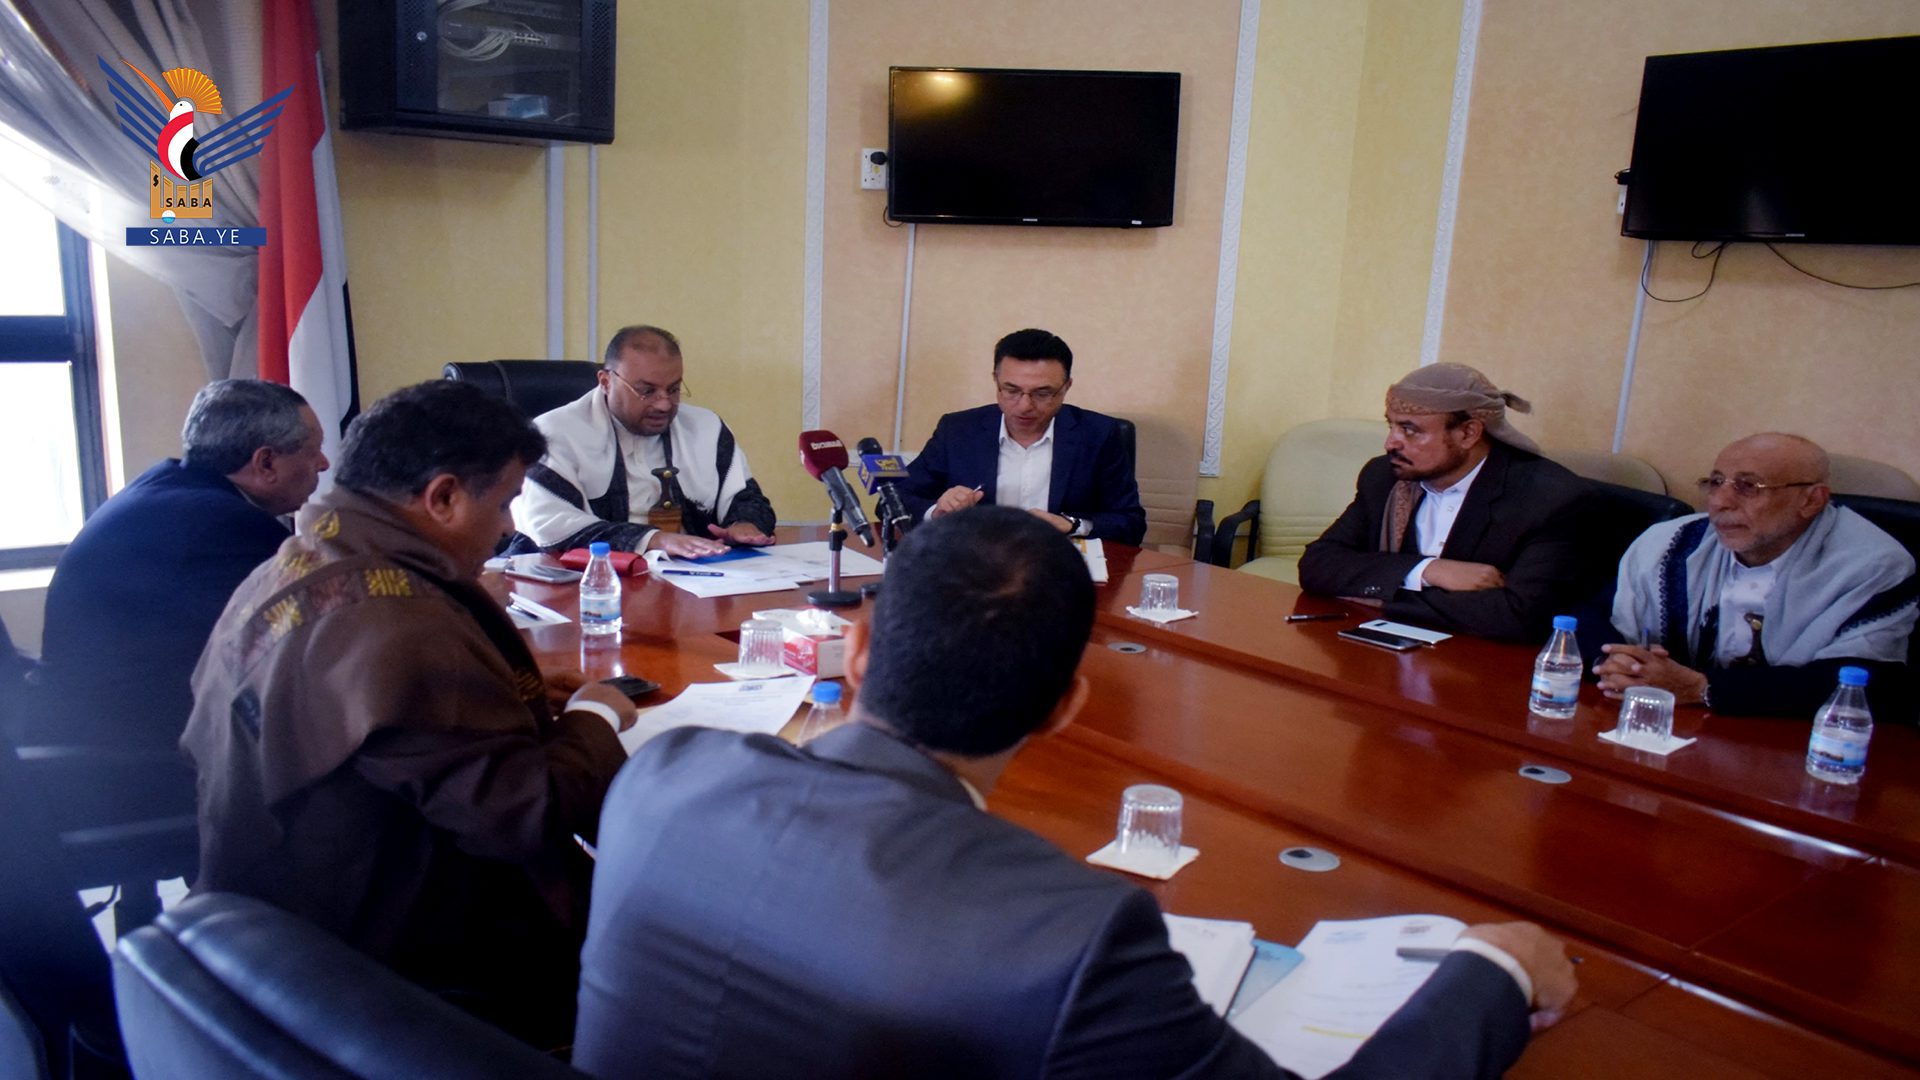 قرار إلزامي هام وسار للمواطنين بشأن أسعار مياه الوايتات بالعاصمة صنعاء